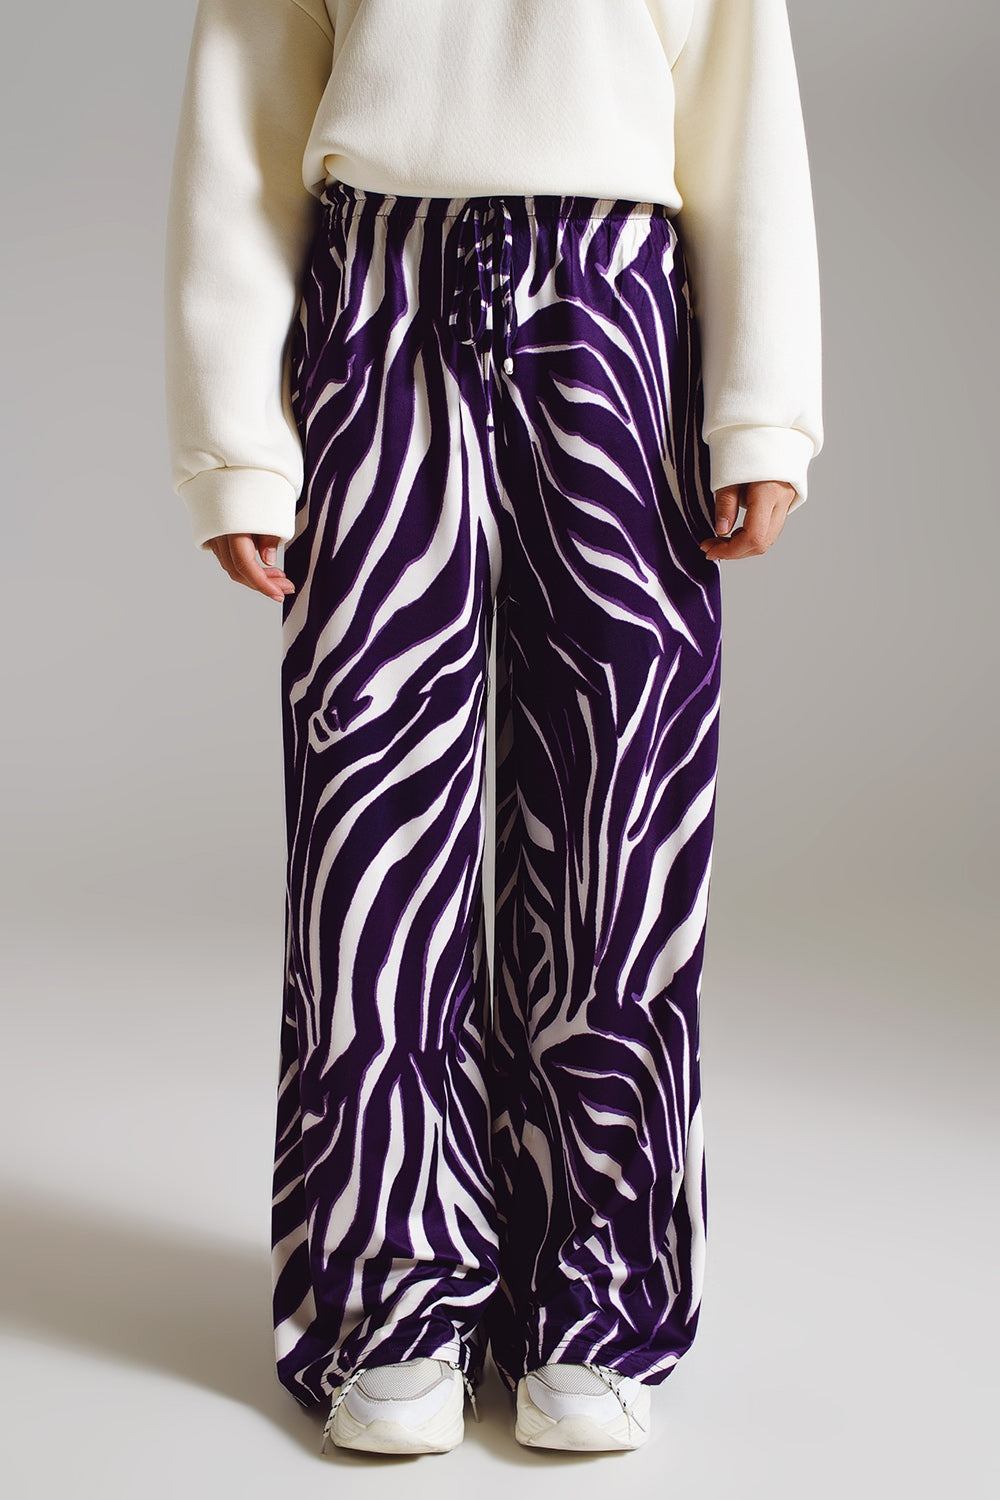 Q2 Pantaloni dritti con stampa zebra in viola e bianco